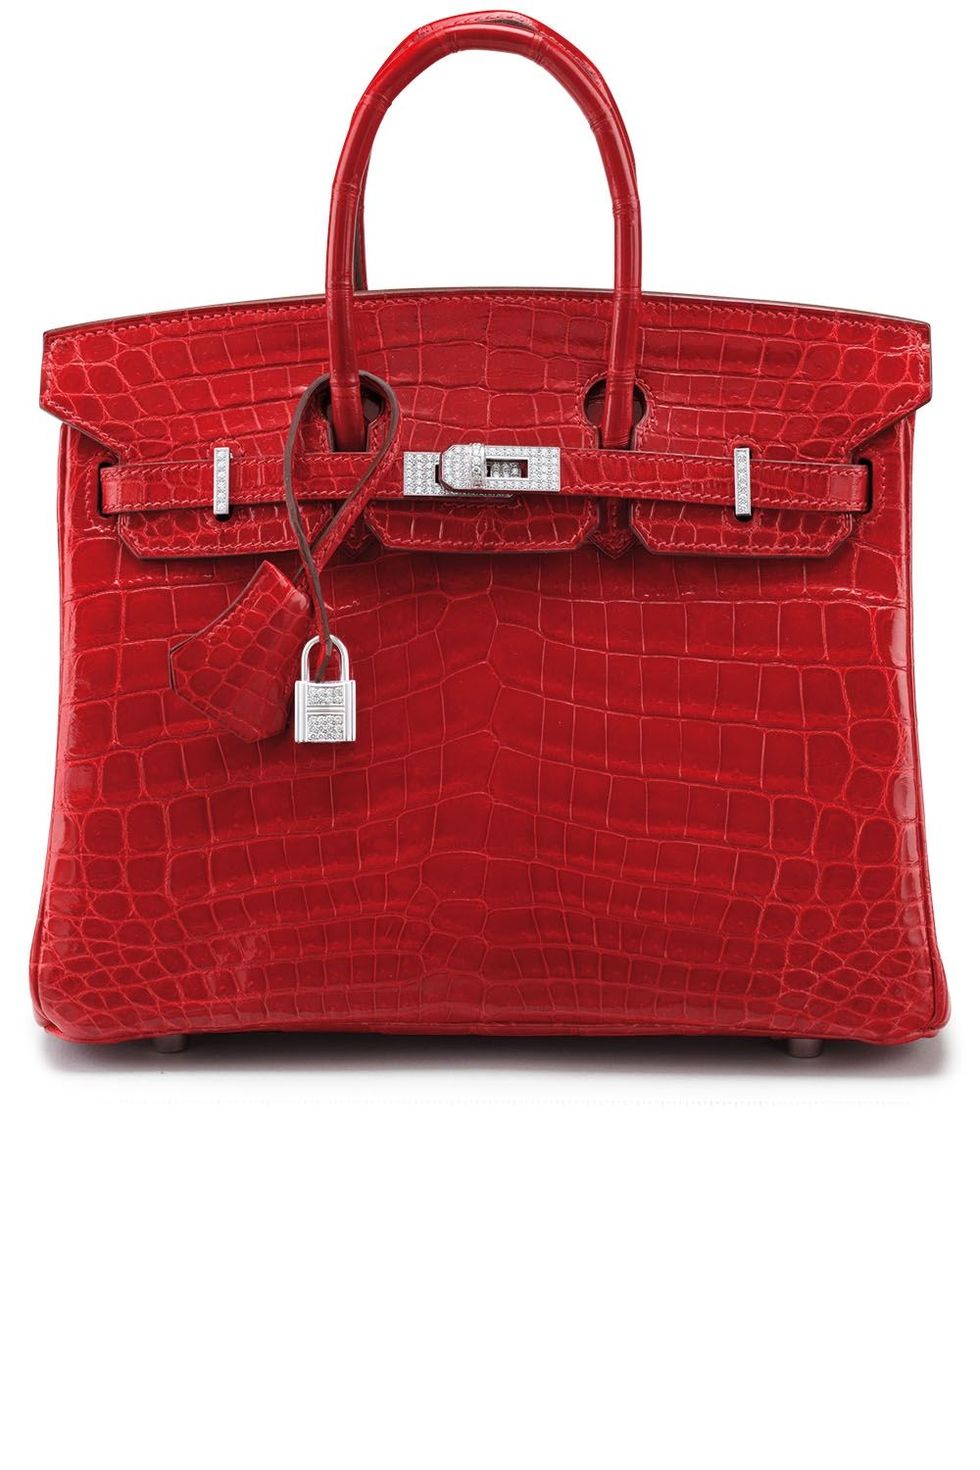 Handbag, Bag, Red, Fashion accessory, Birkin bag, Product, Leather, Kelly bag, Shoulder bag, Tote bag, 